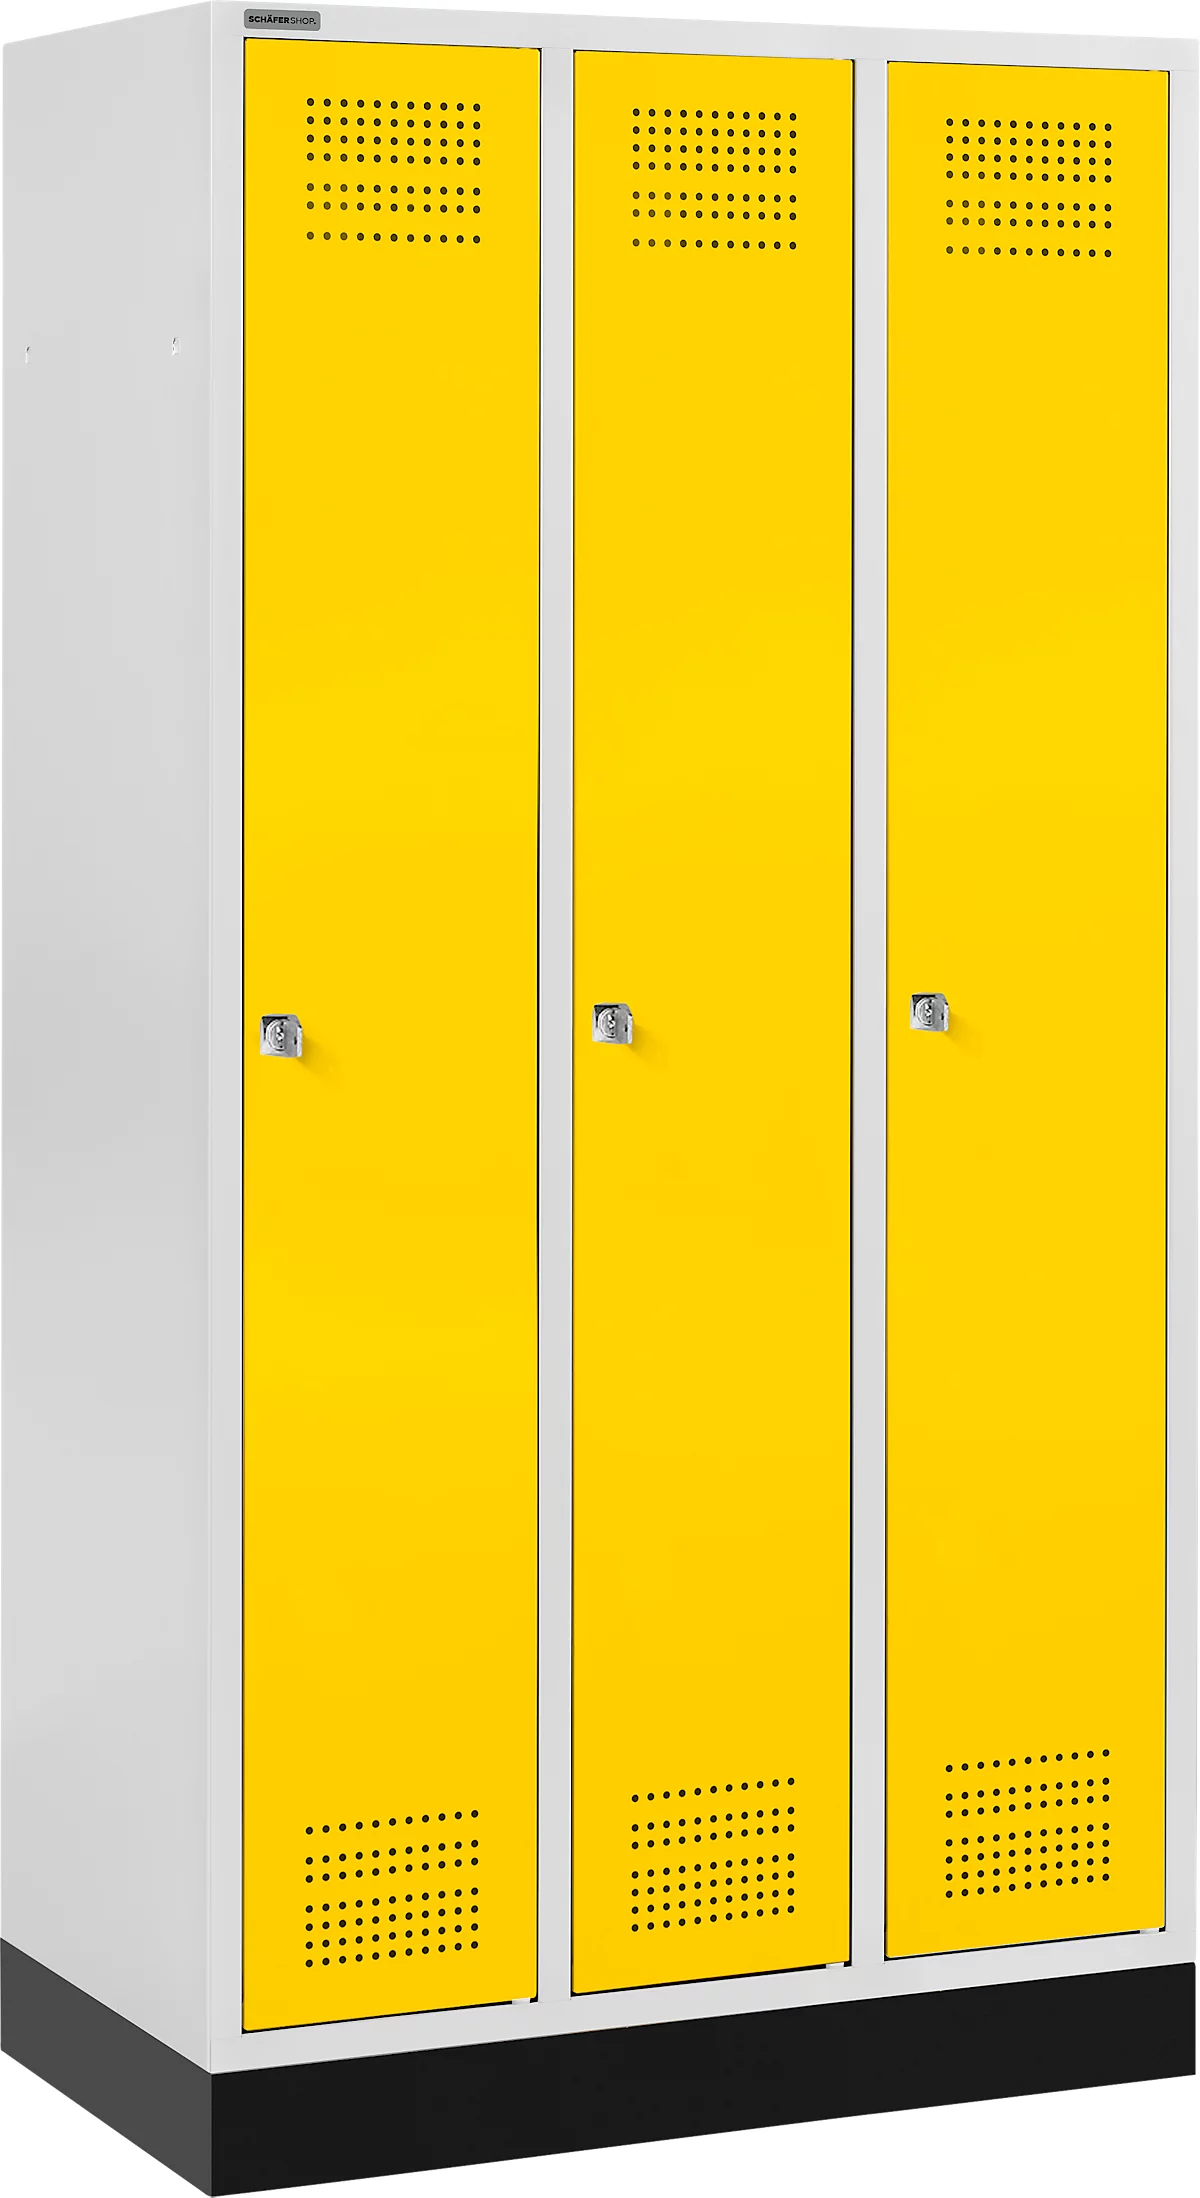 Schäfer Shop Genius Kledinglocker met fitting, 3 compartimenten, cilinderslot, lichtgrijs/geel